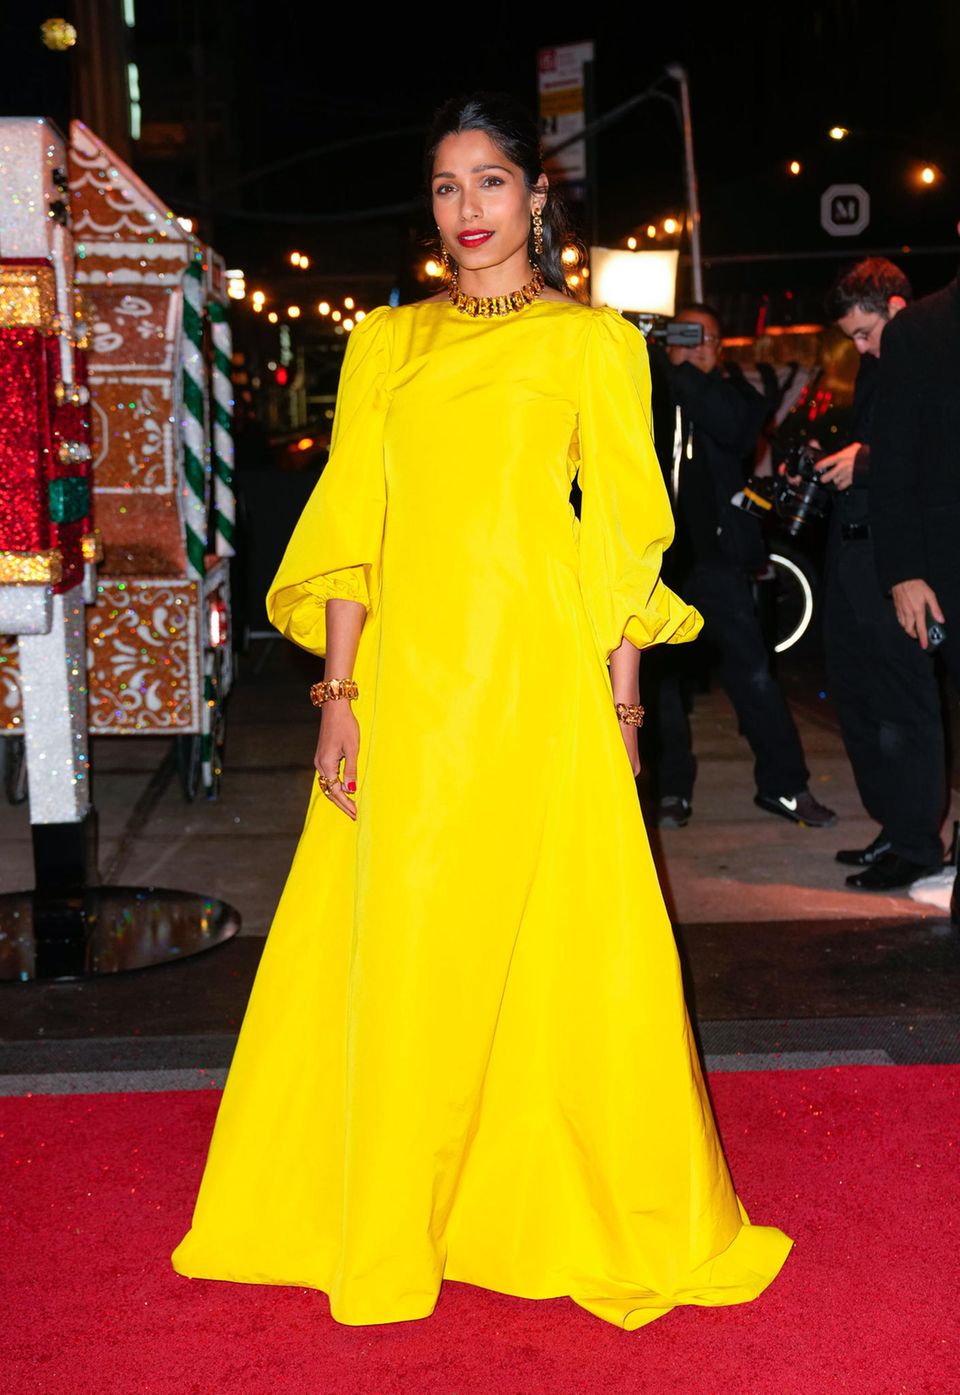 Schauspielerin Freida Pinto setzt auf Knallfarbe! In einem kanariengelben Kleid in A-Linie und mit Puffärmeln, strahlt sie auf dem roten Teppich. Den Look betont sie nur noch mit goldenen Accessoires.